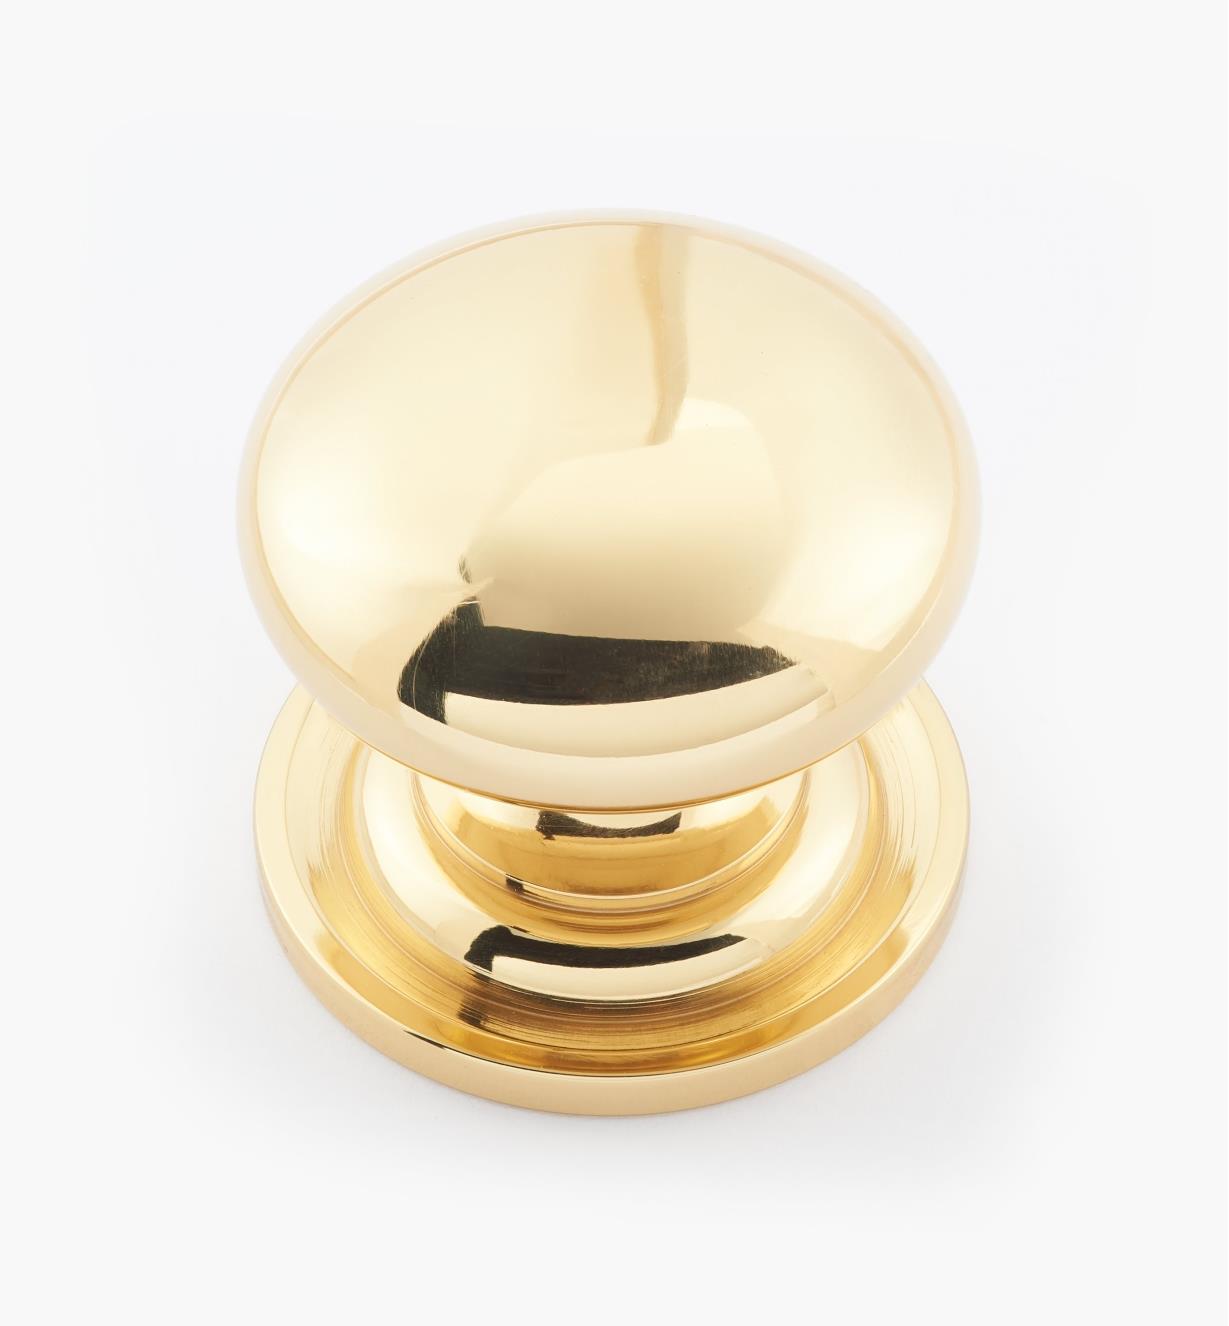 02W1513 - 1 3/8" × 1 1/4" Round Brass Knob, Polished Brass